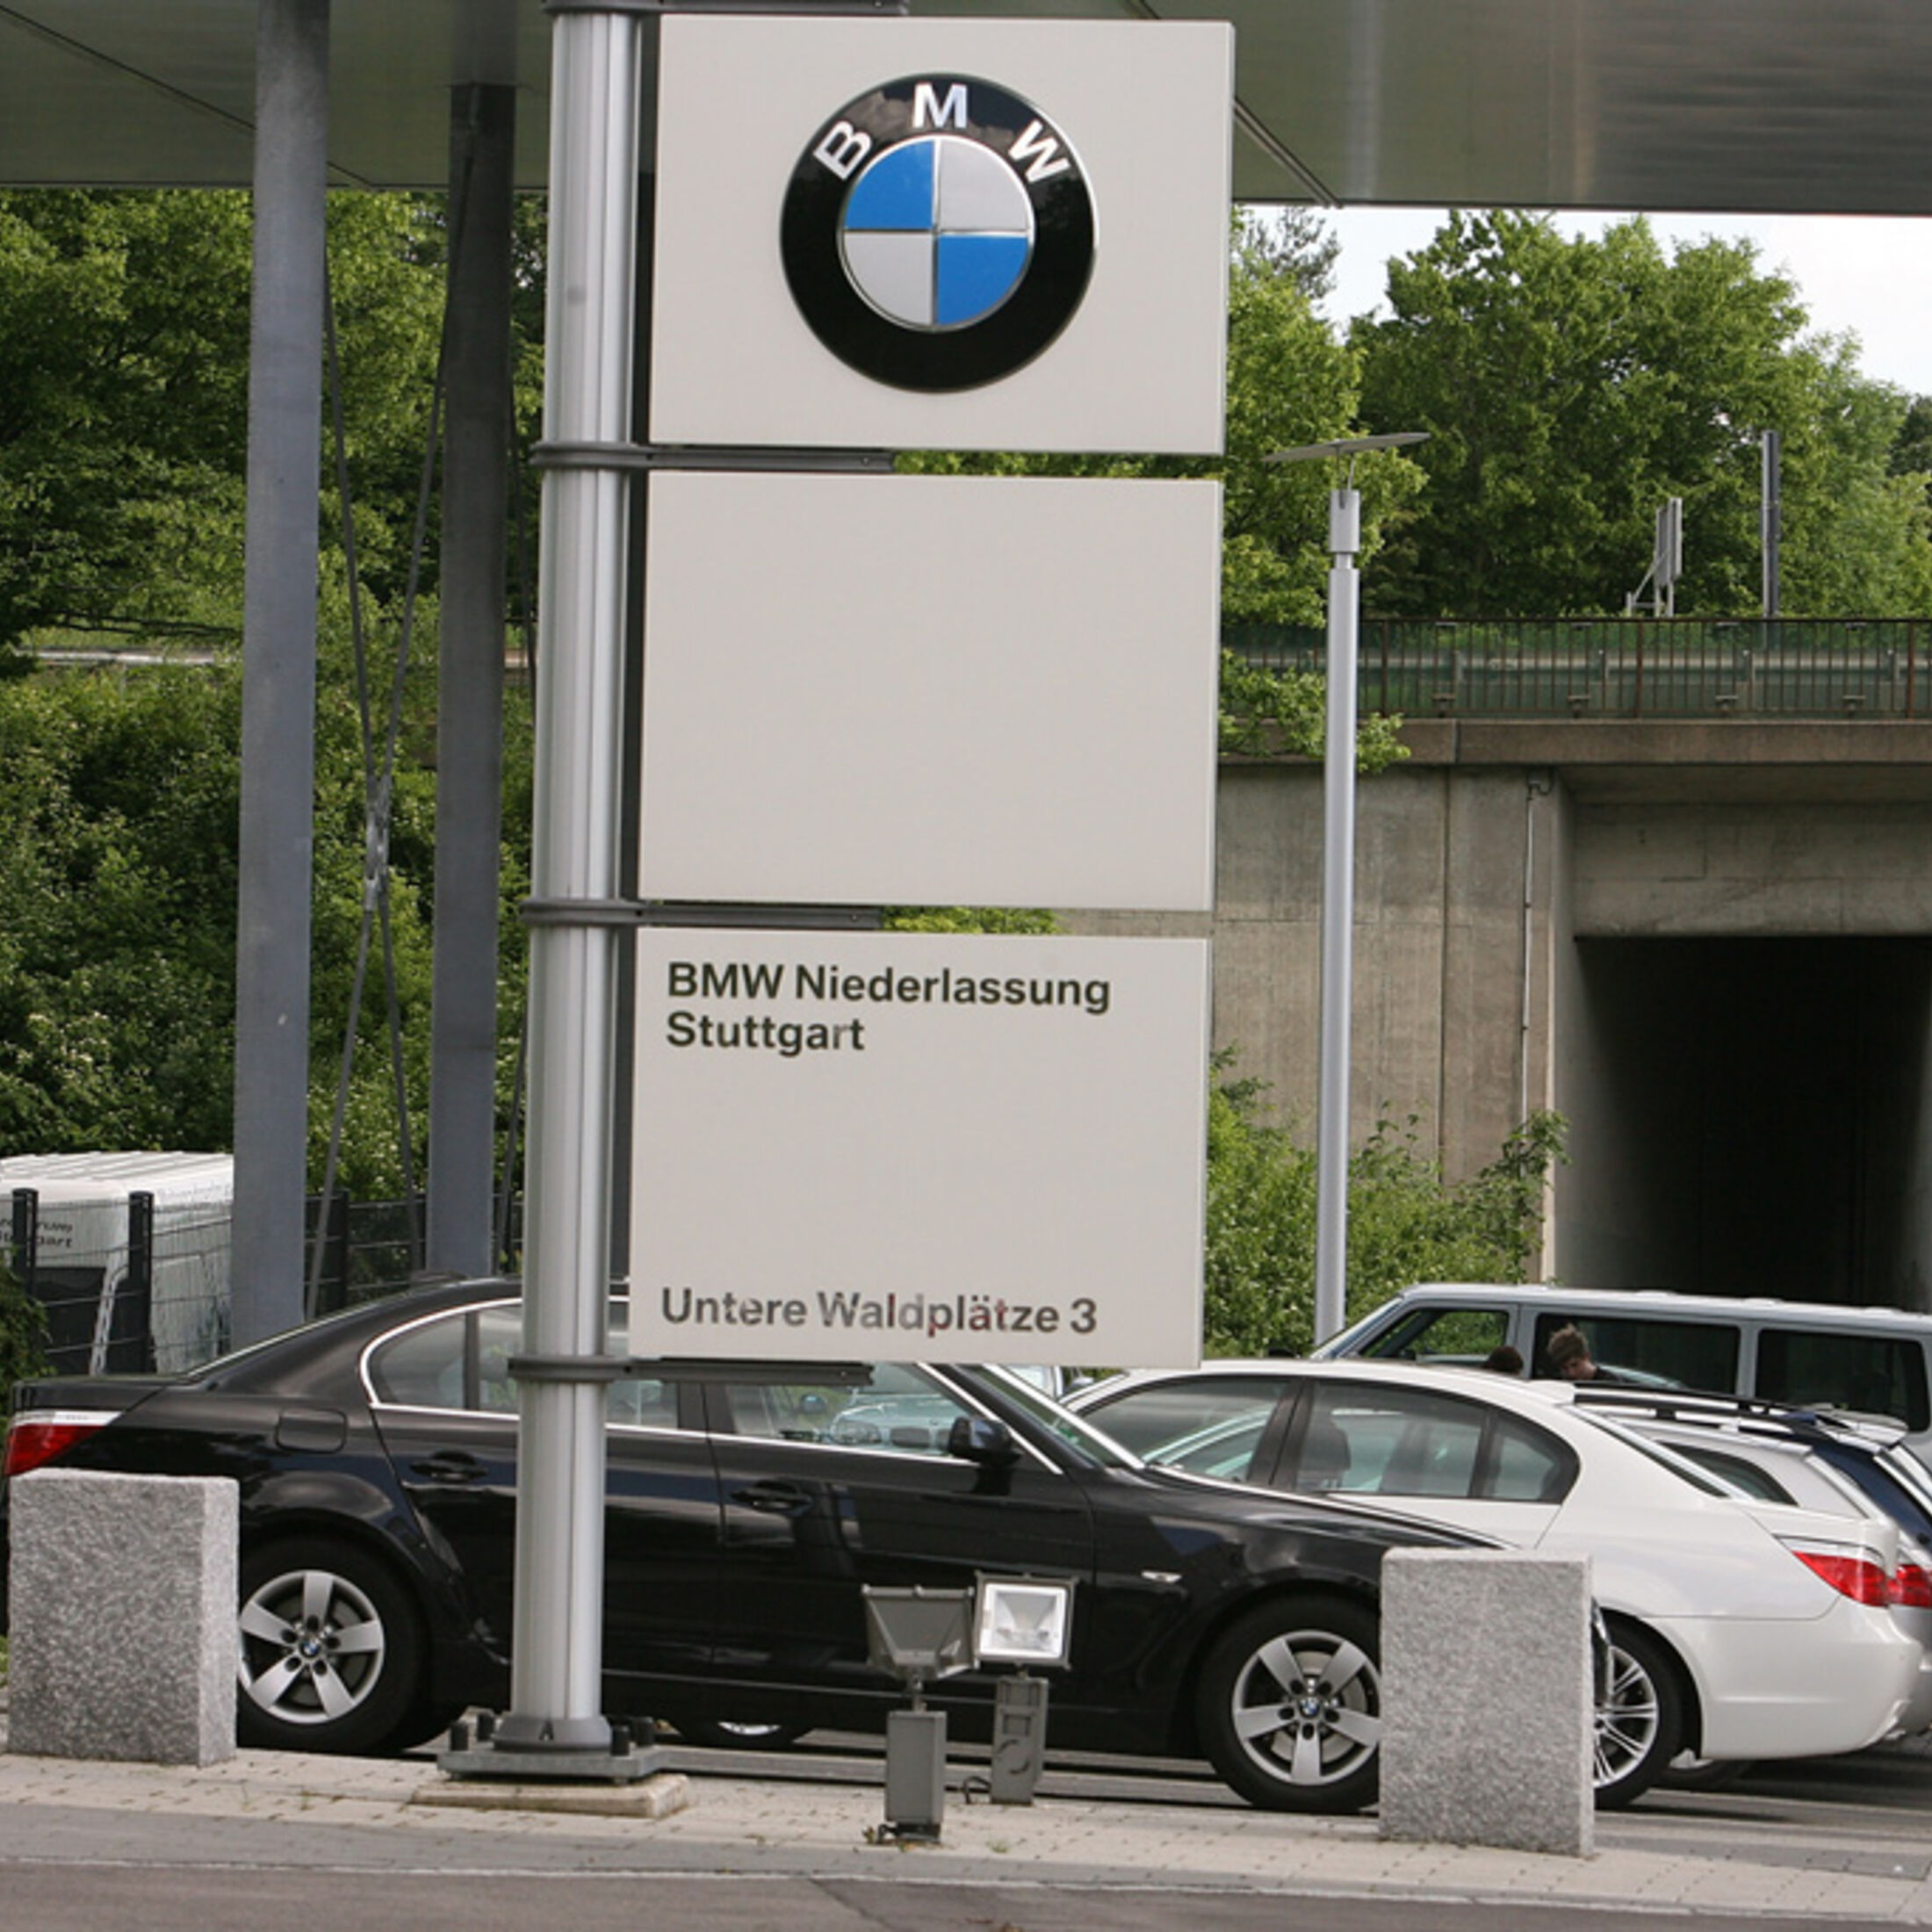 https://imgr1.auto-motor-und-sport.de/BMW-Werkstatt-BMW-Niederlassung-Stuttgart-jsonLd1x1-351f0d2d-248779.jpeg